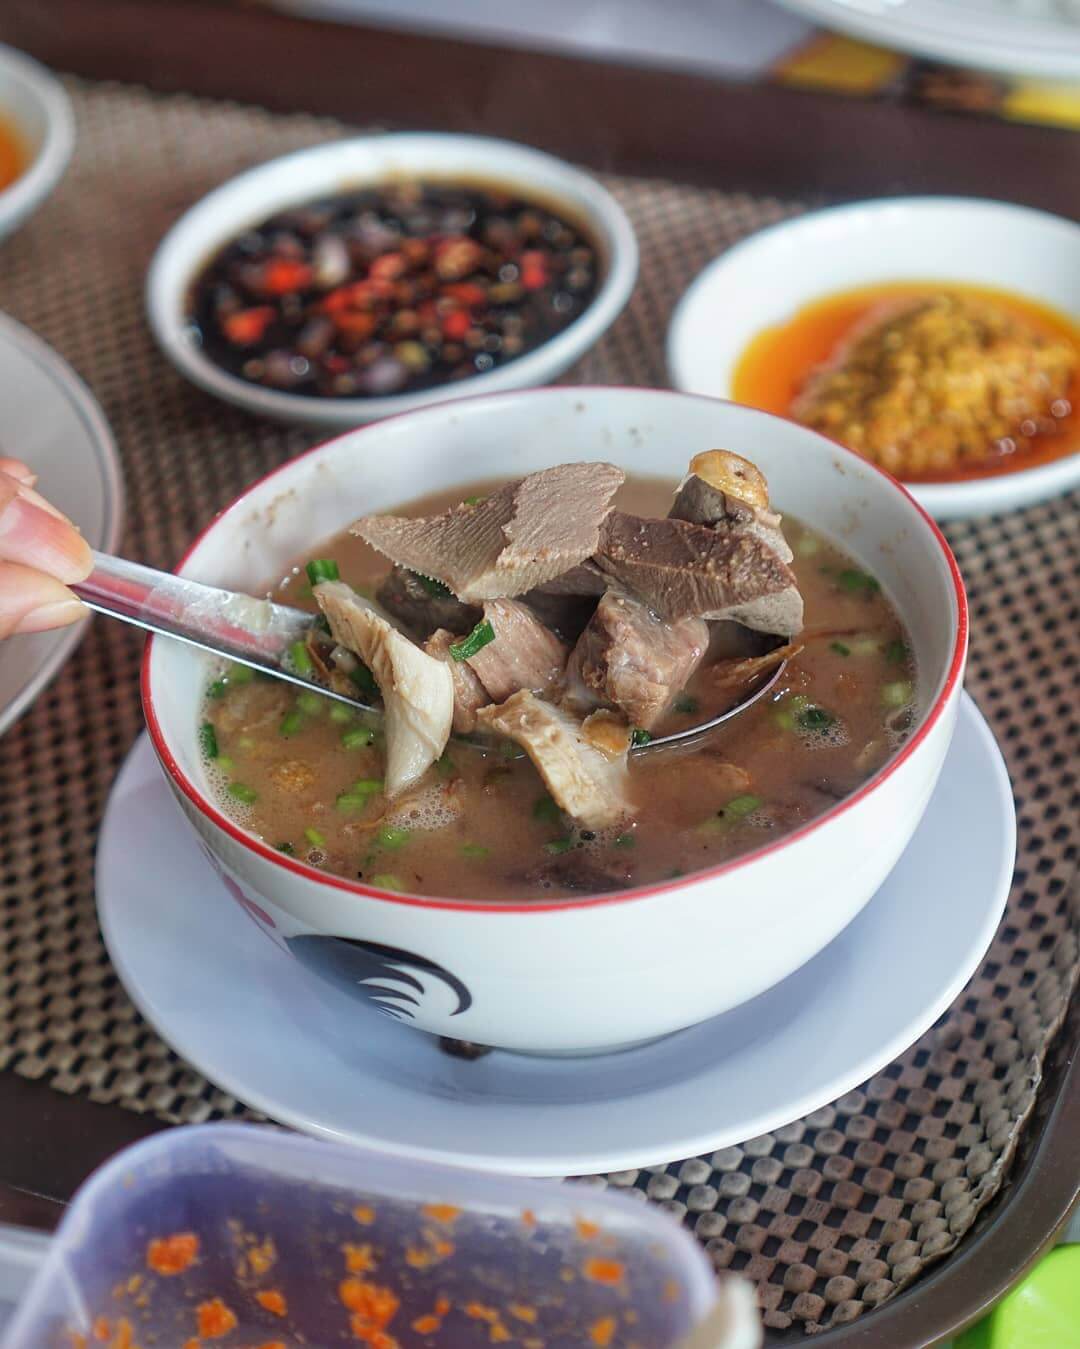 sup konro merupakan makanan khas yang terkenal dari